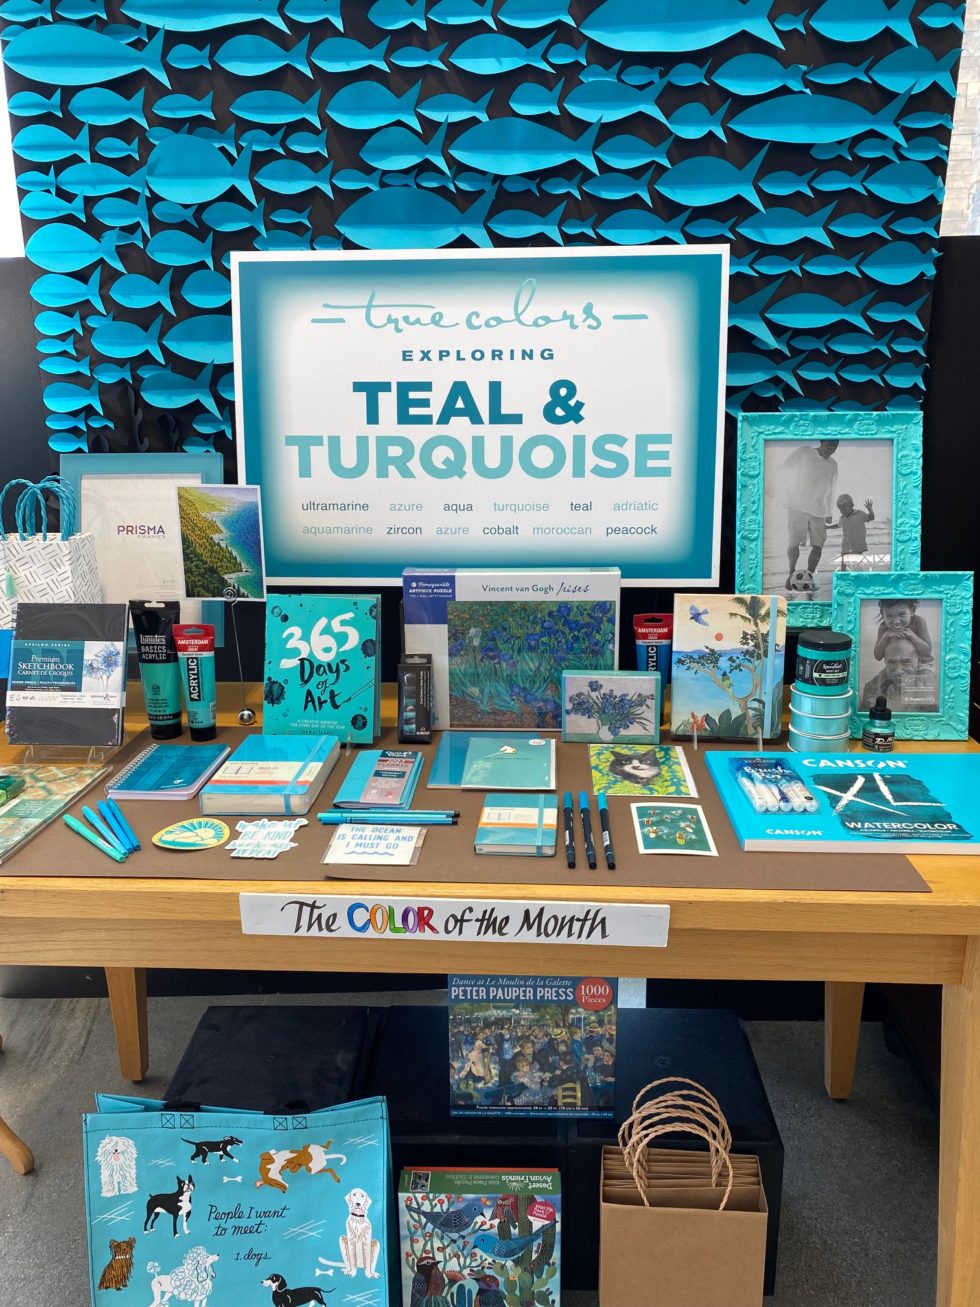 September Reveals Turquoise Teal University Art